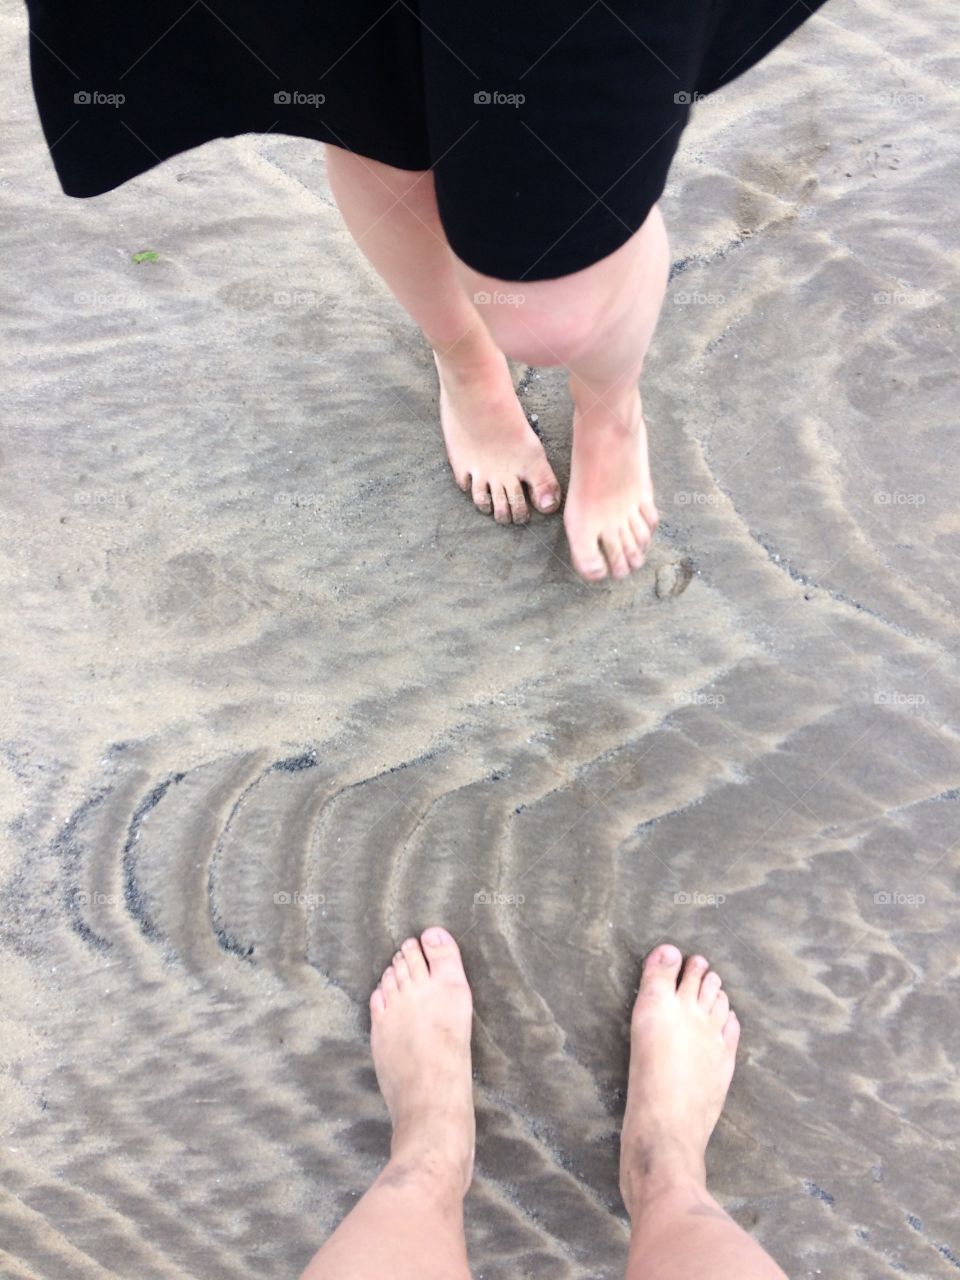 Beach feet